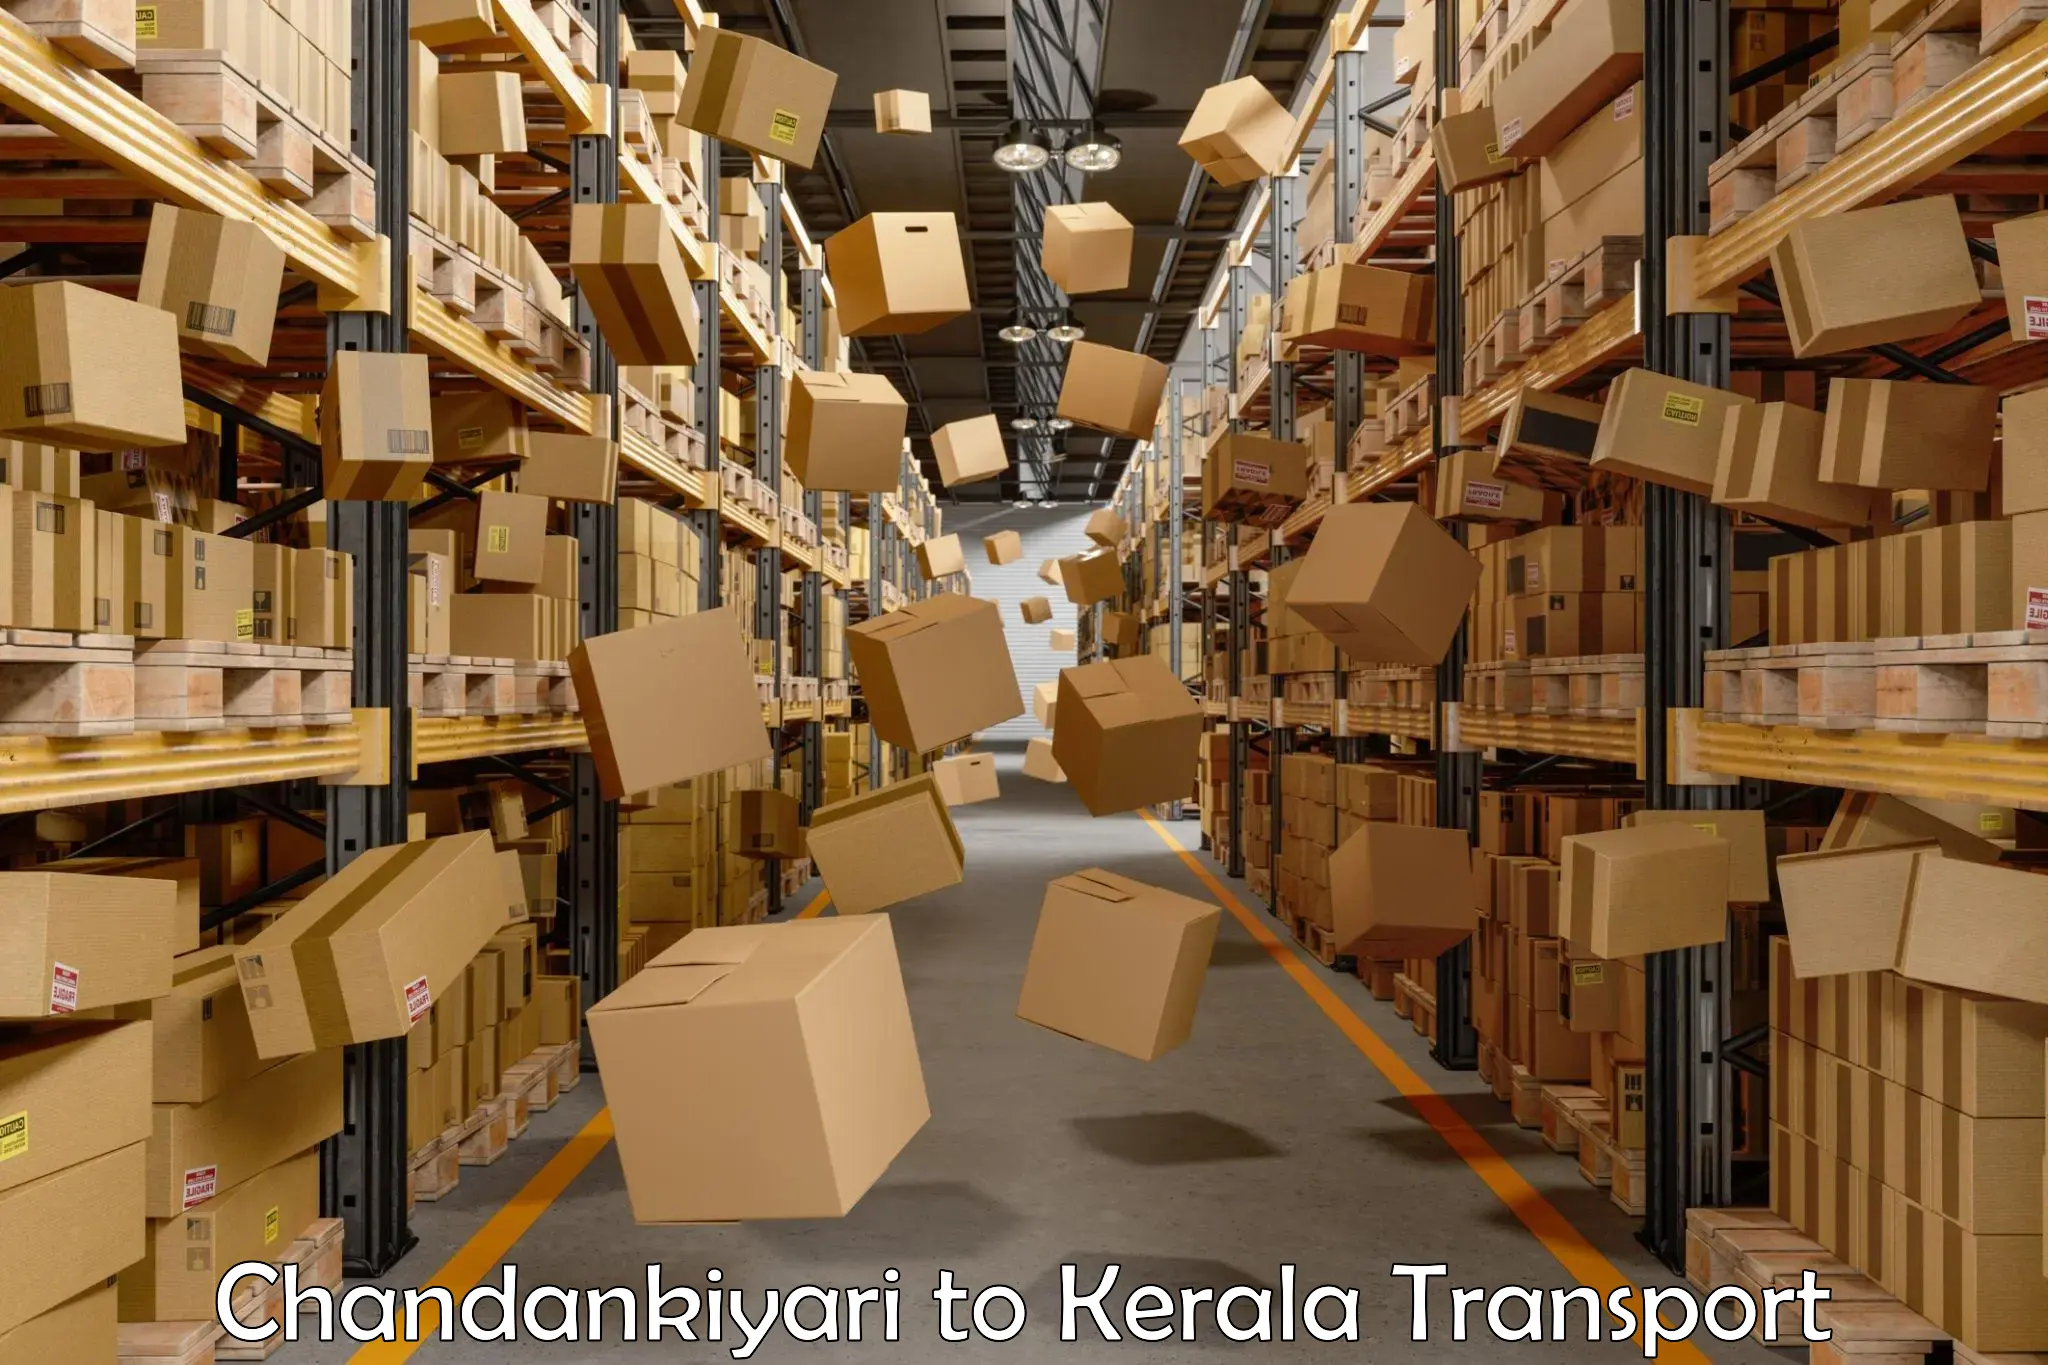 Part load transport service in India Chandankiyari to Kakkur